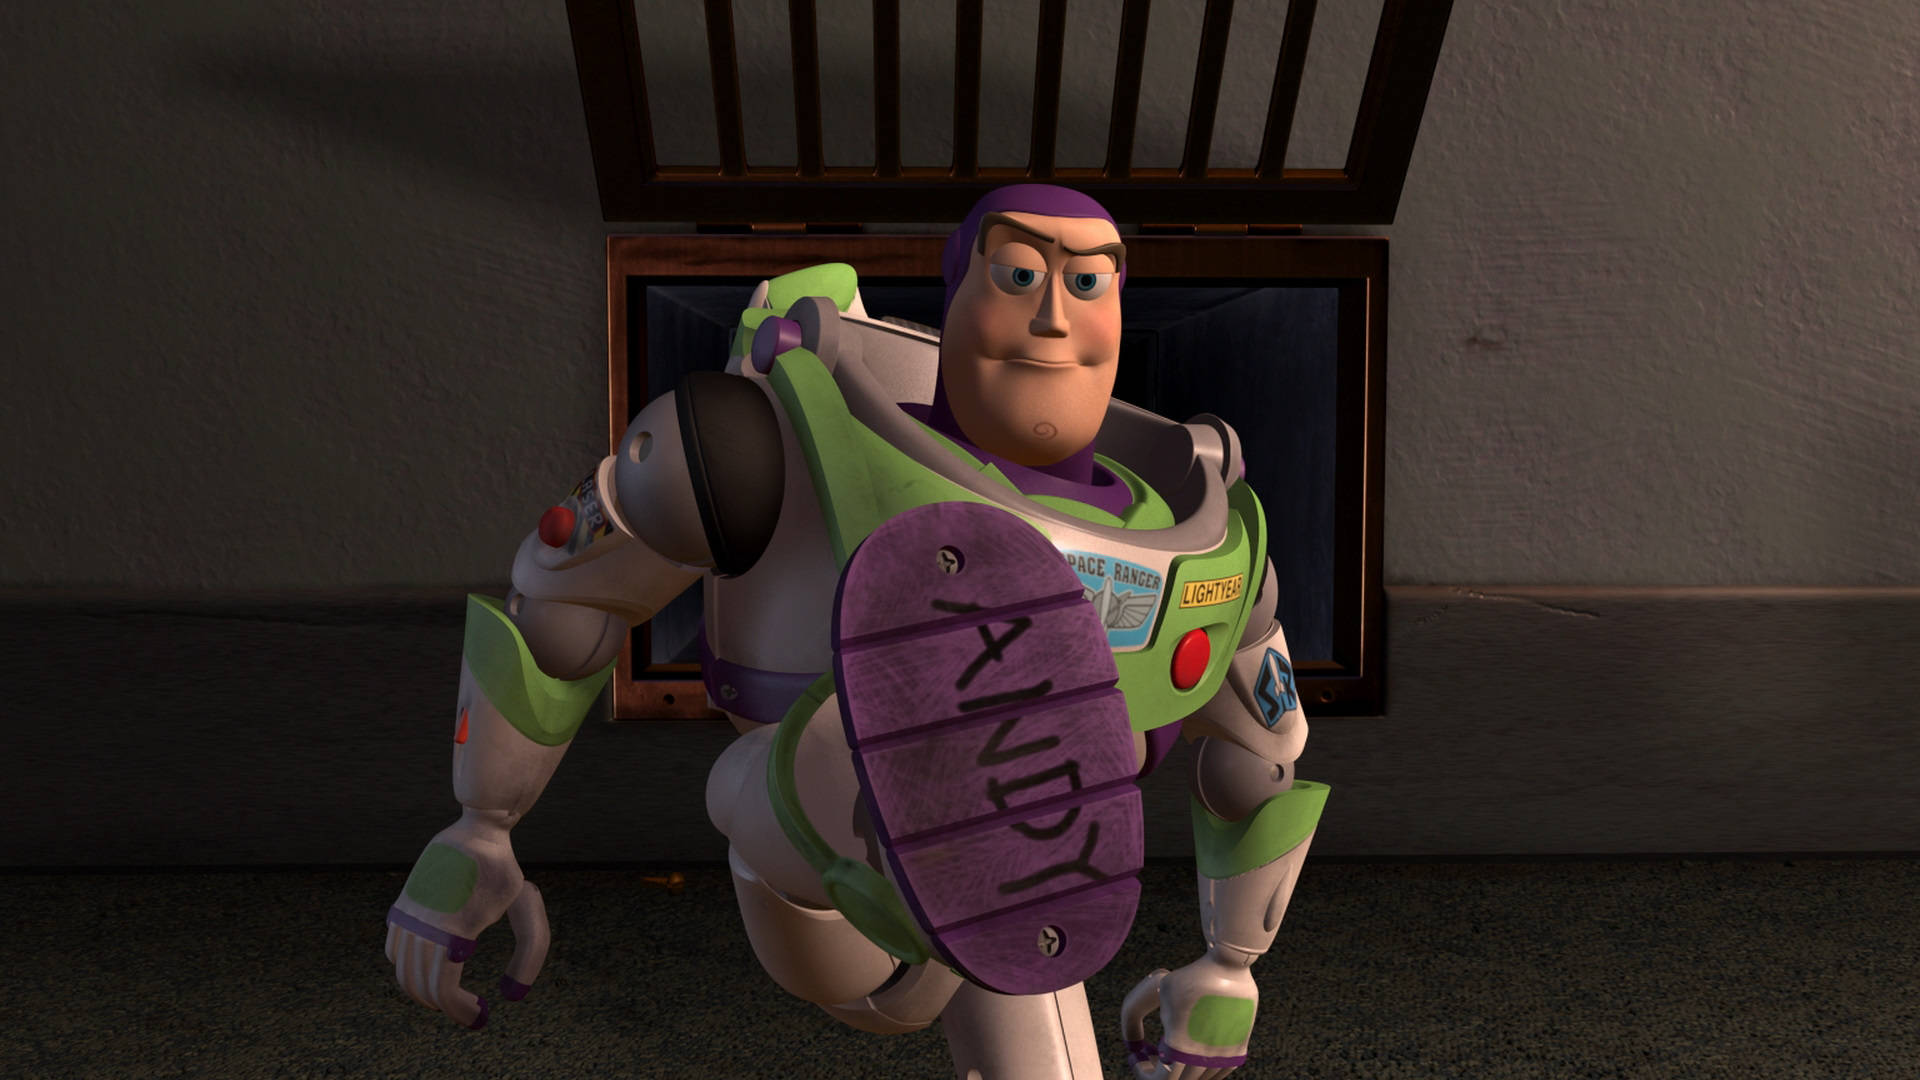 Buzz Lightyear Toy Story 2 Background